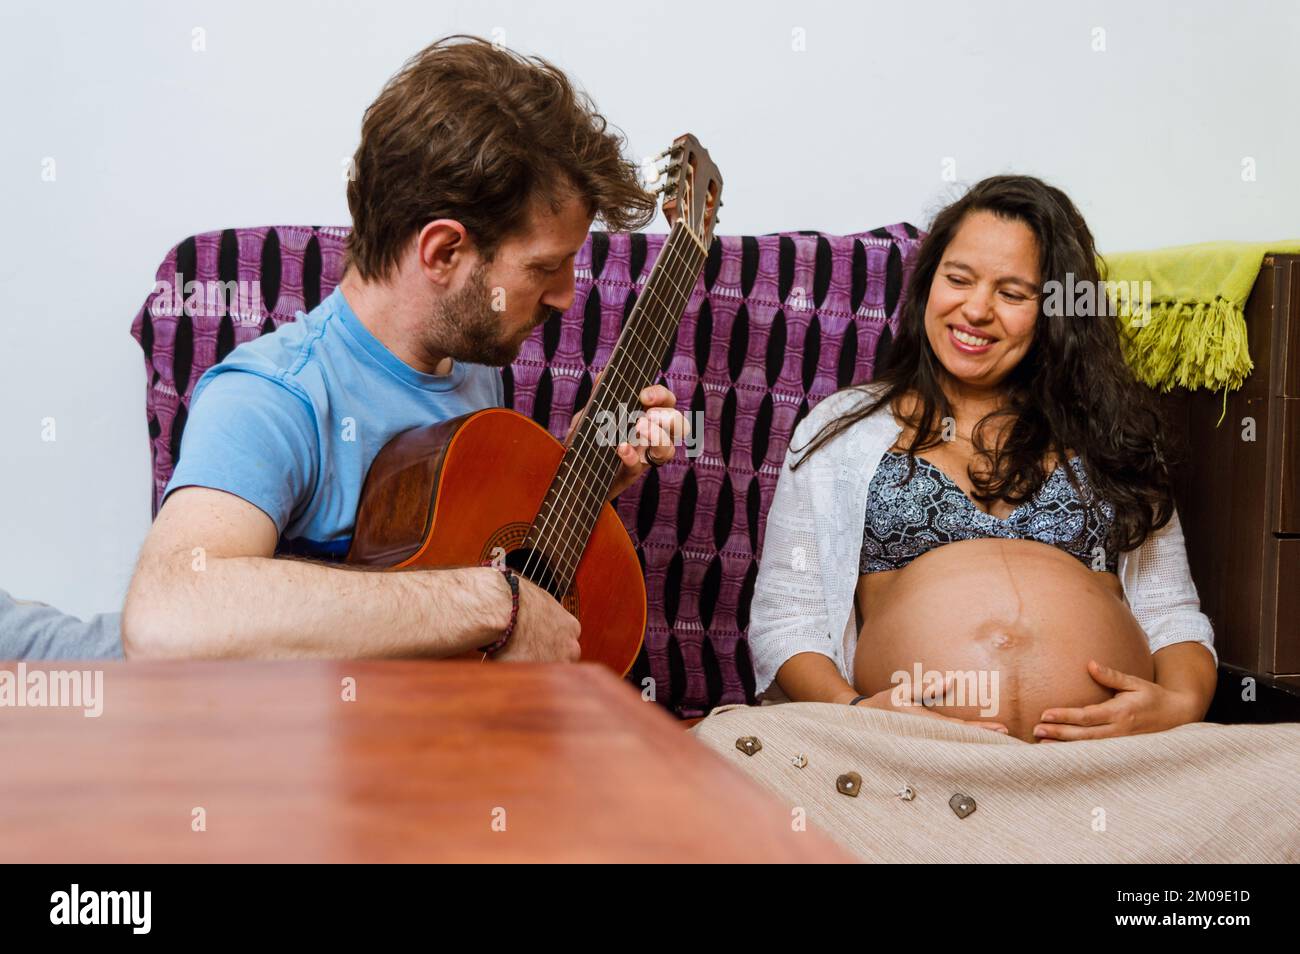 homme argentin caucasien adulte jouant la guitare acoustique pour son bébé qui est à l'intérieur de l'utérus de sa femme, une femme brésilienne brunette adulte, sittin Banque D'Images